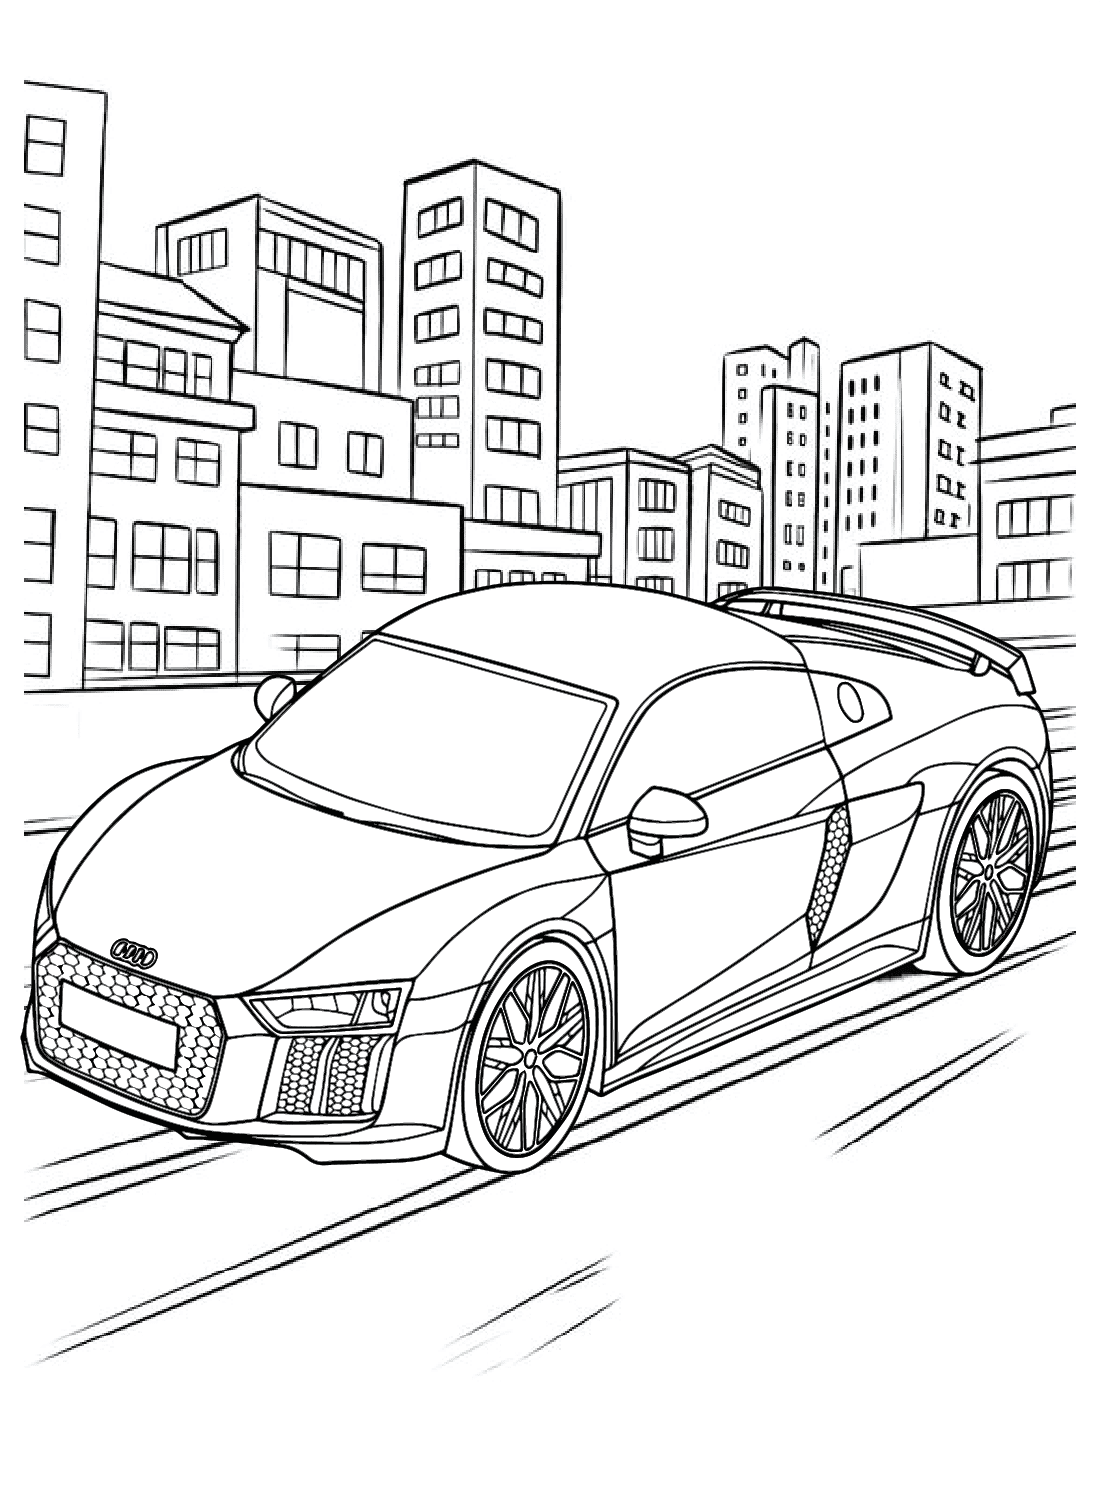 Раскраска модели Audi R8 от Audi